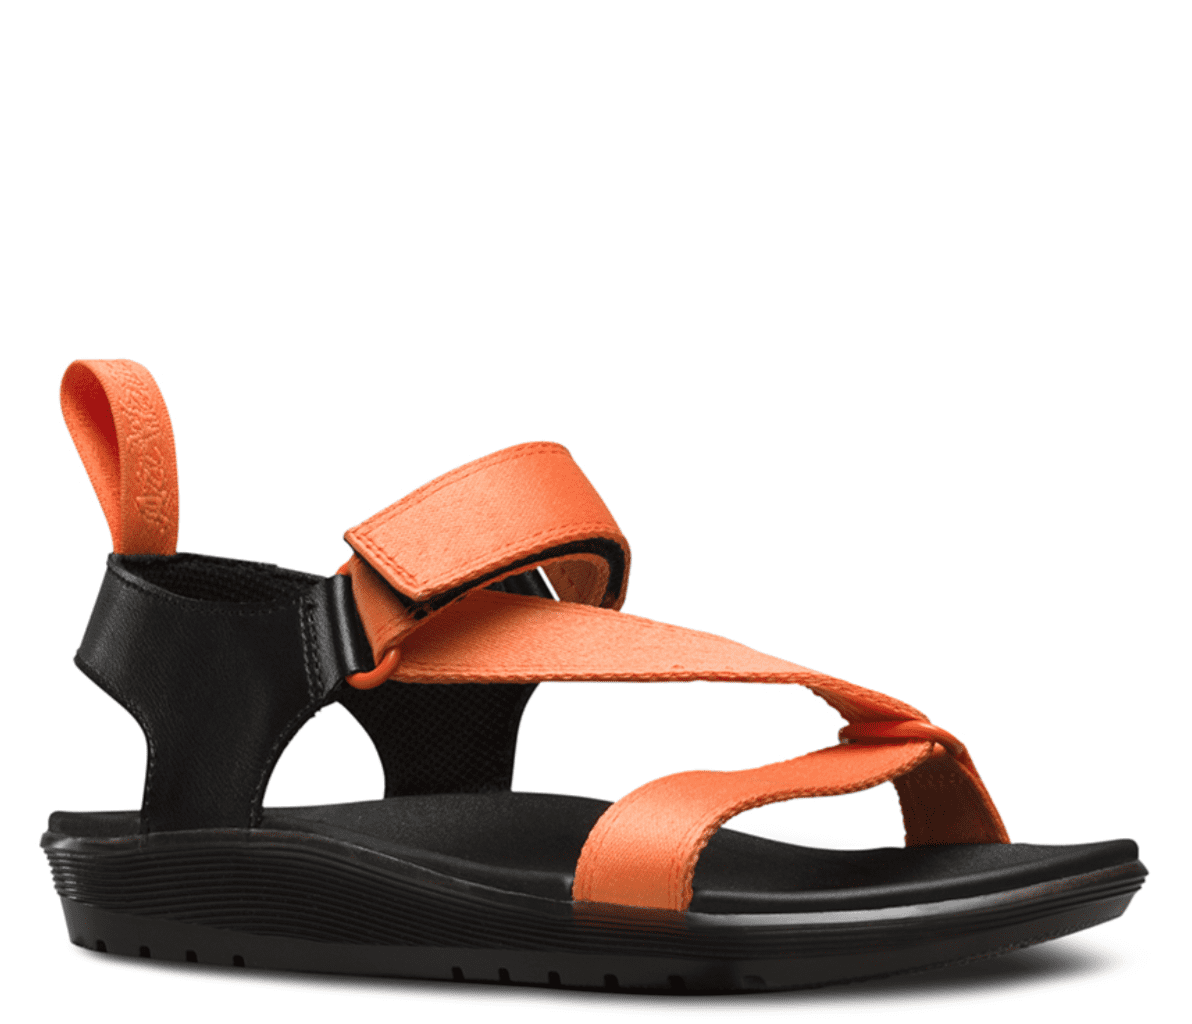 dr martens balfour sandals